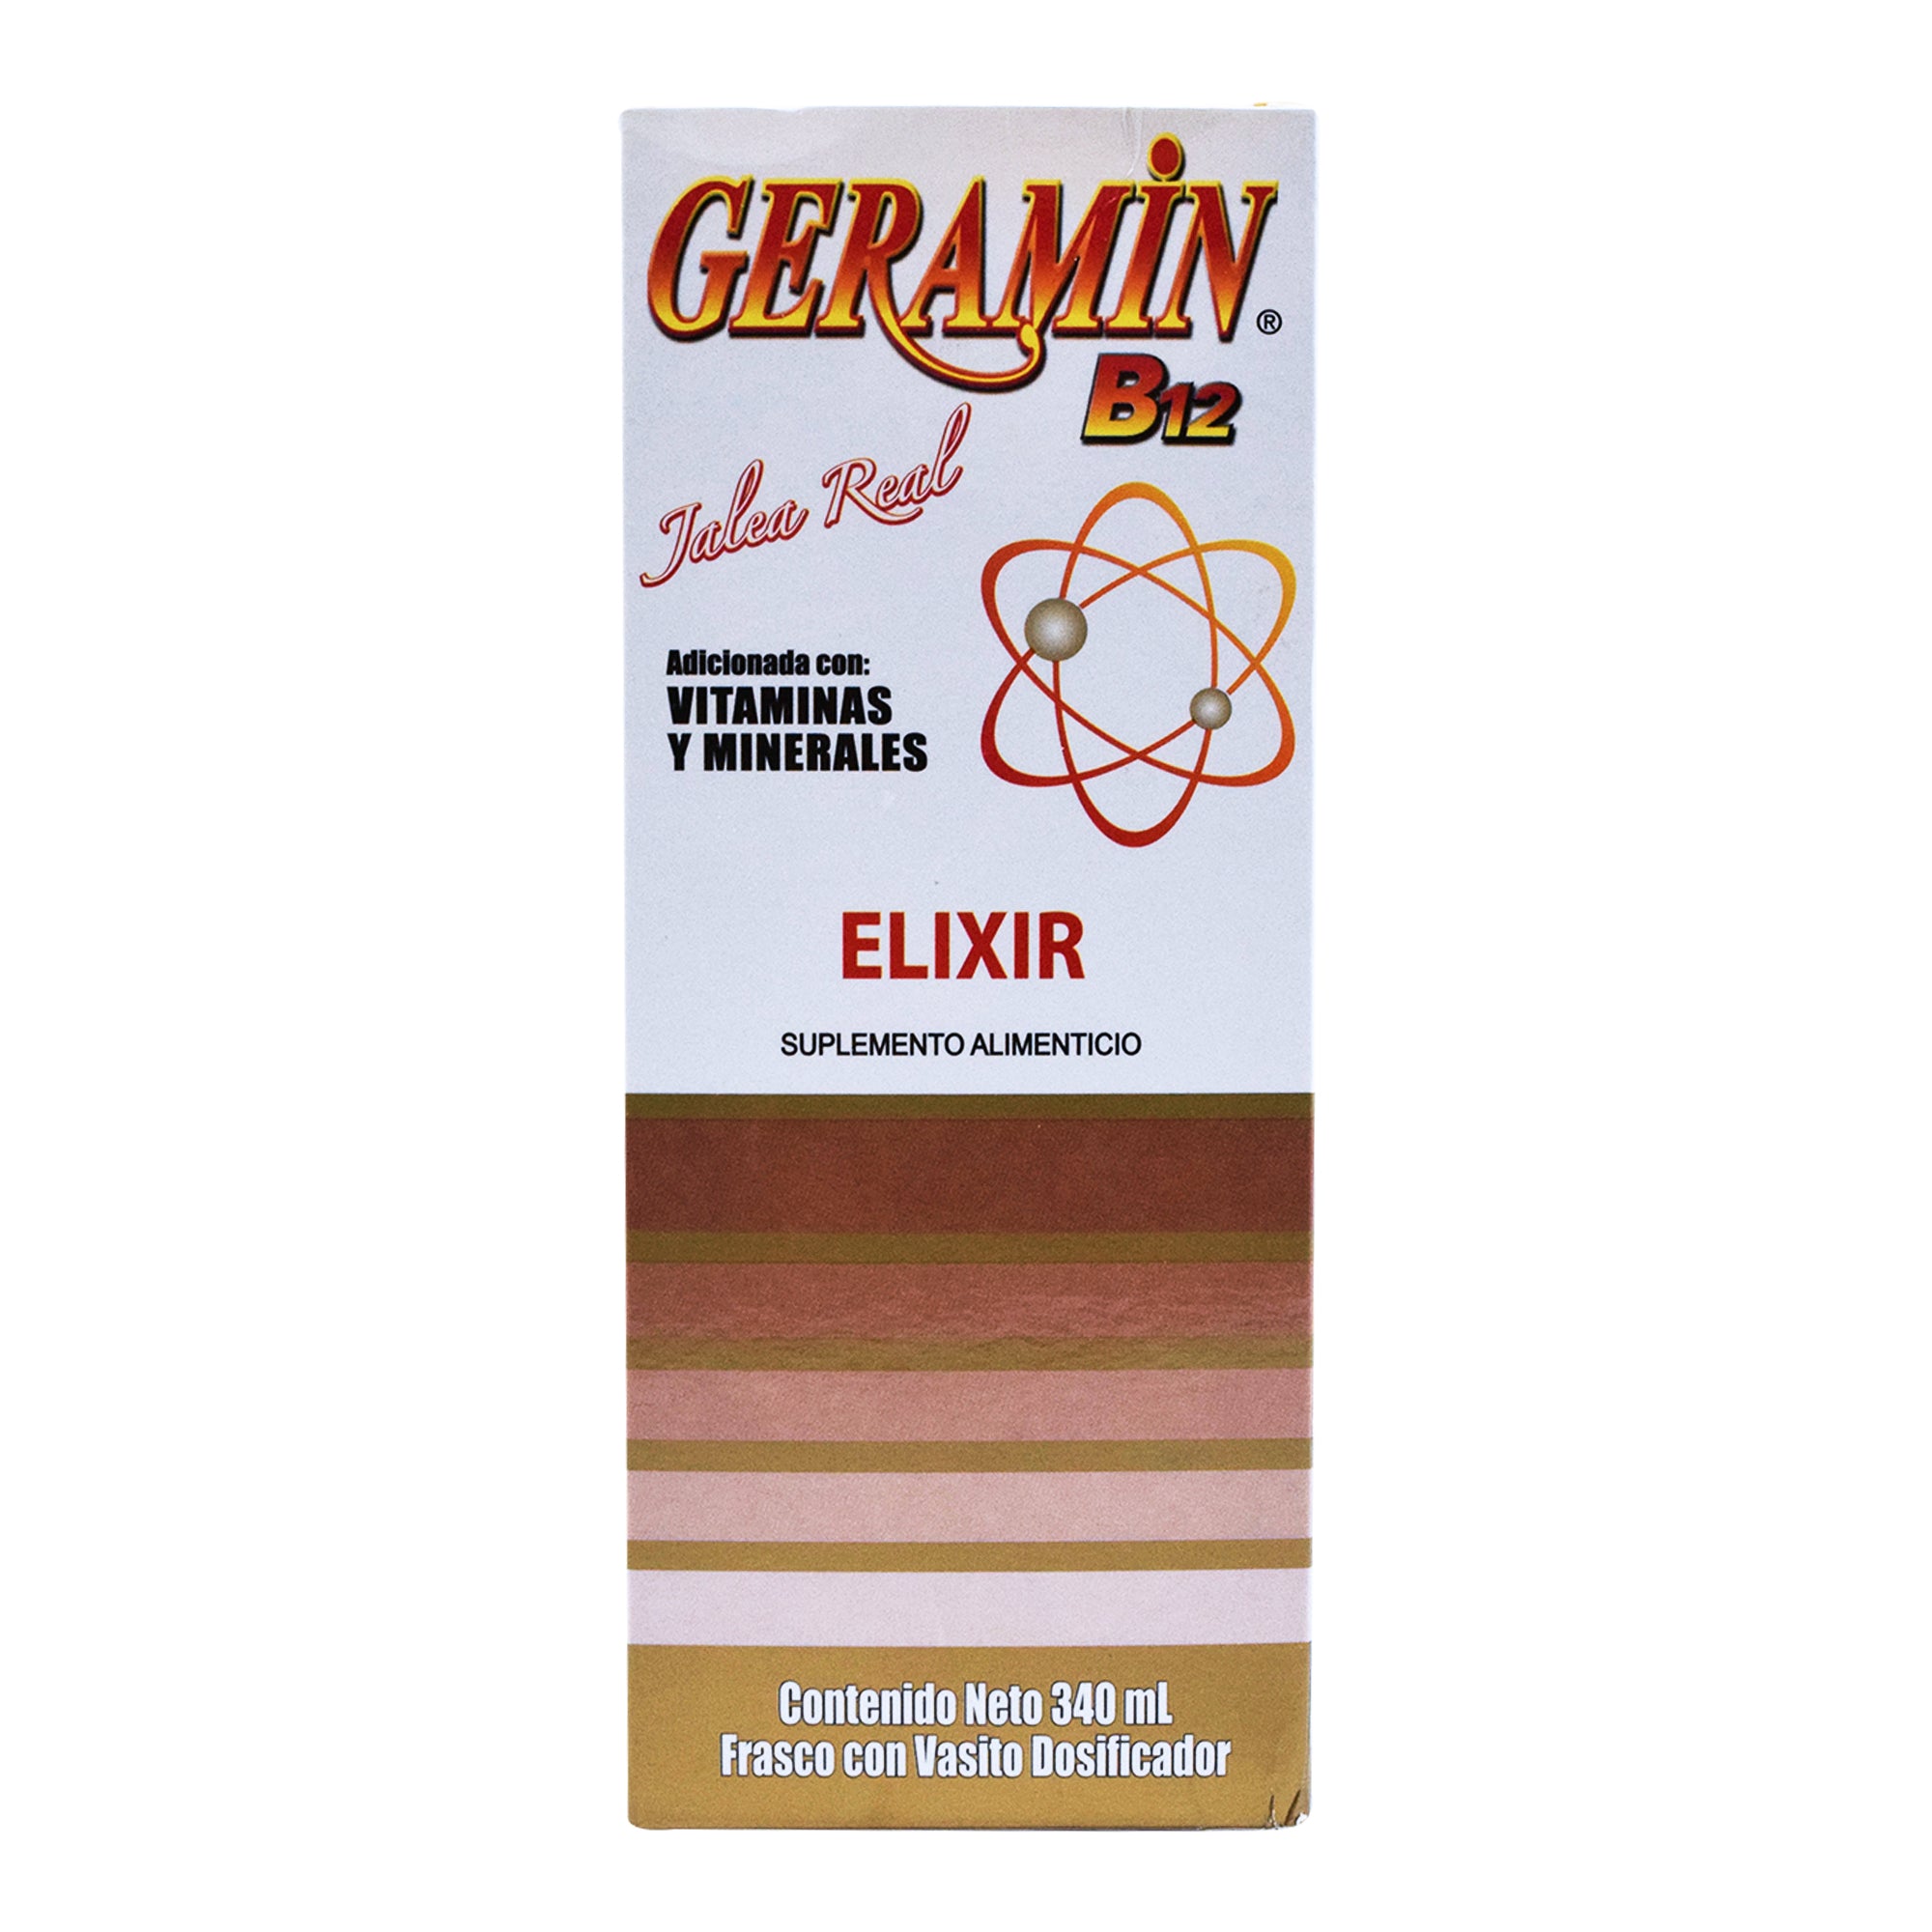 Geramin b12 elixir vigorizante 340 ml